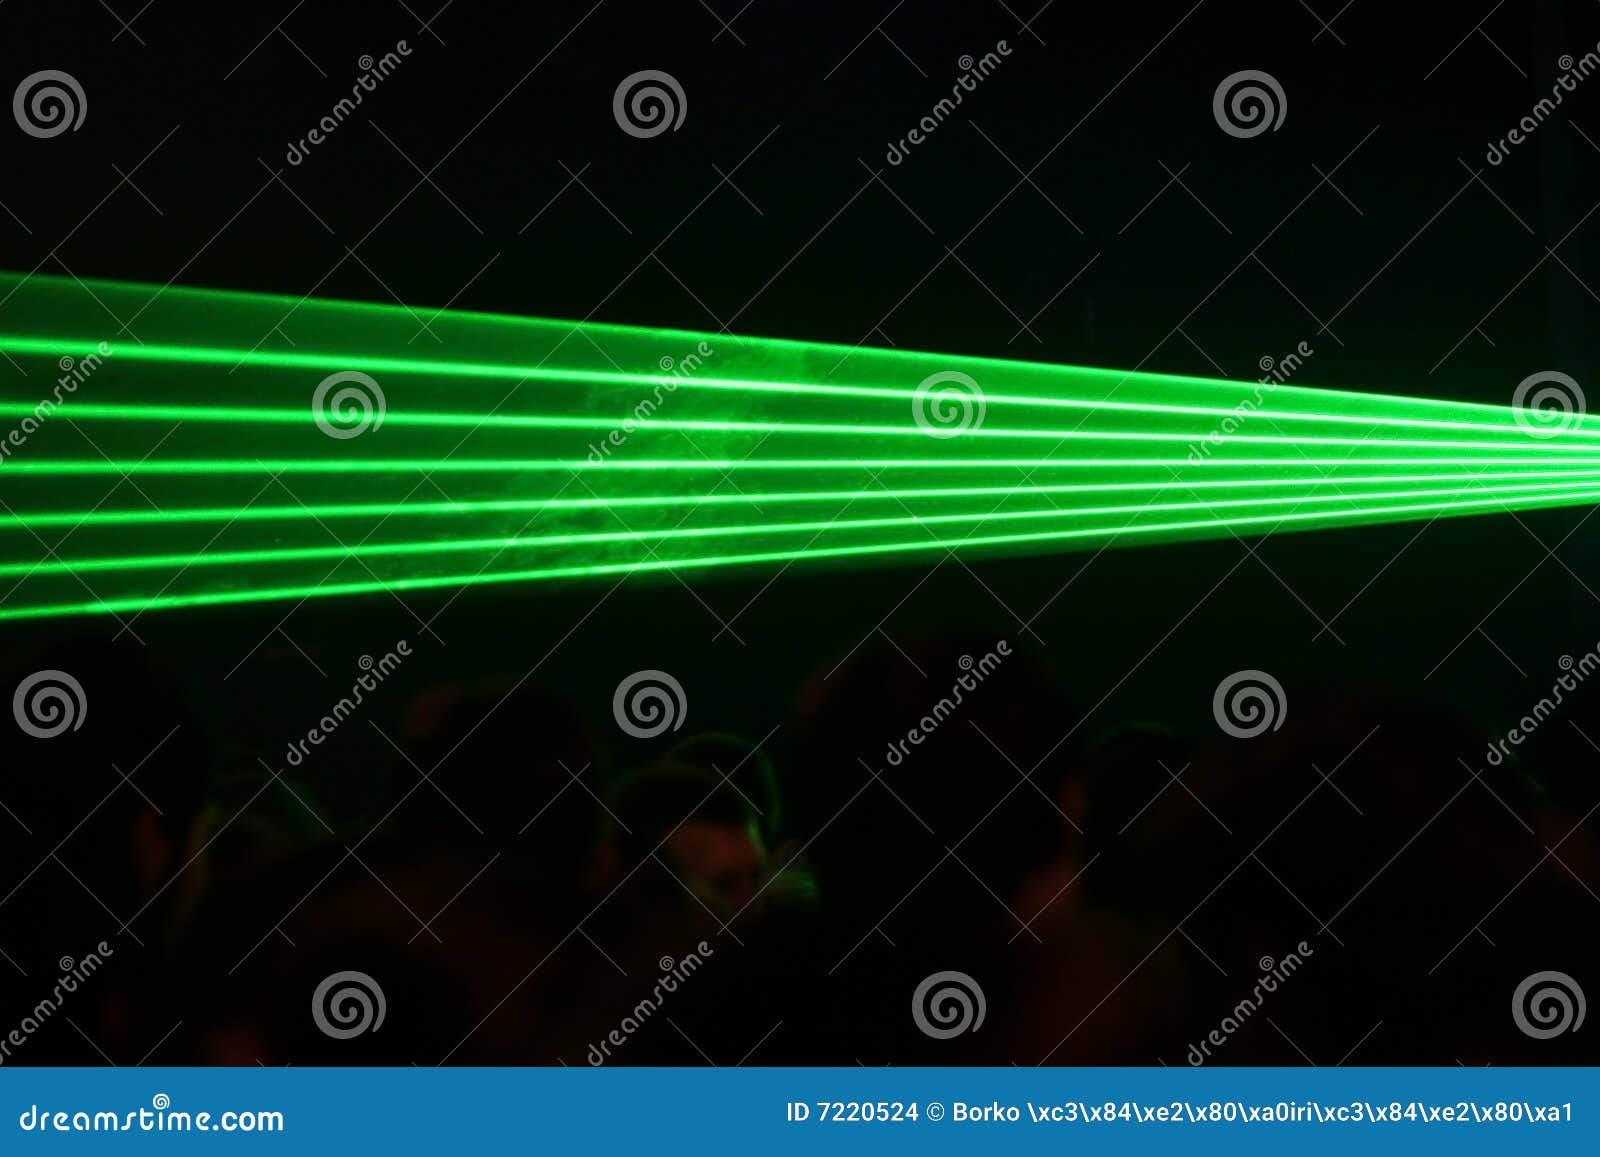 лазер лучей зеленый. партия лазера лучей зеленая